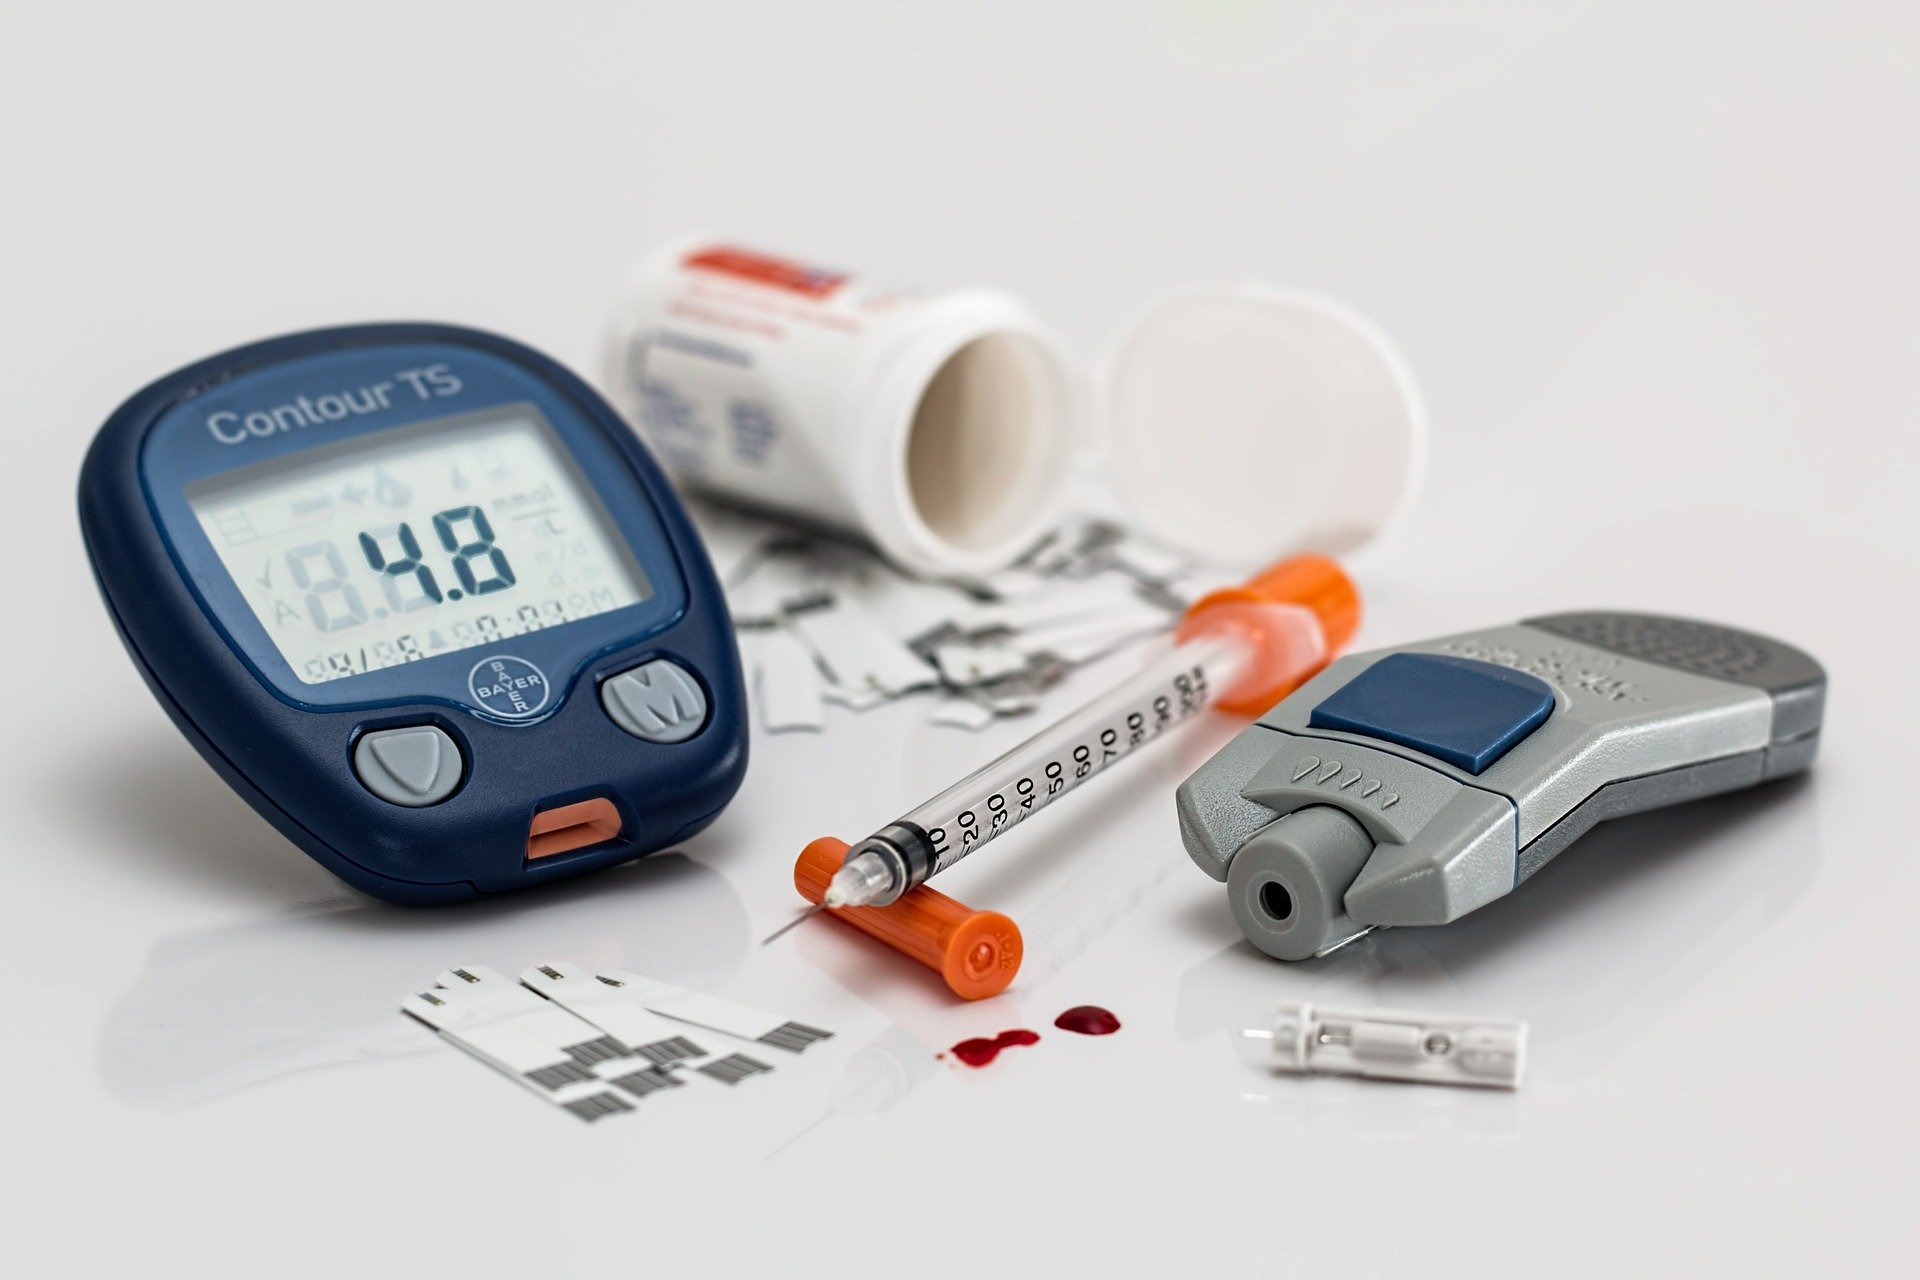 hipertenzija i dijabetes melitusa tipa 2